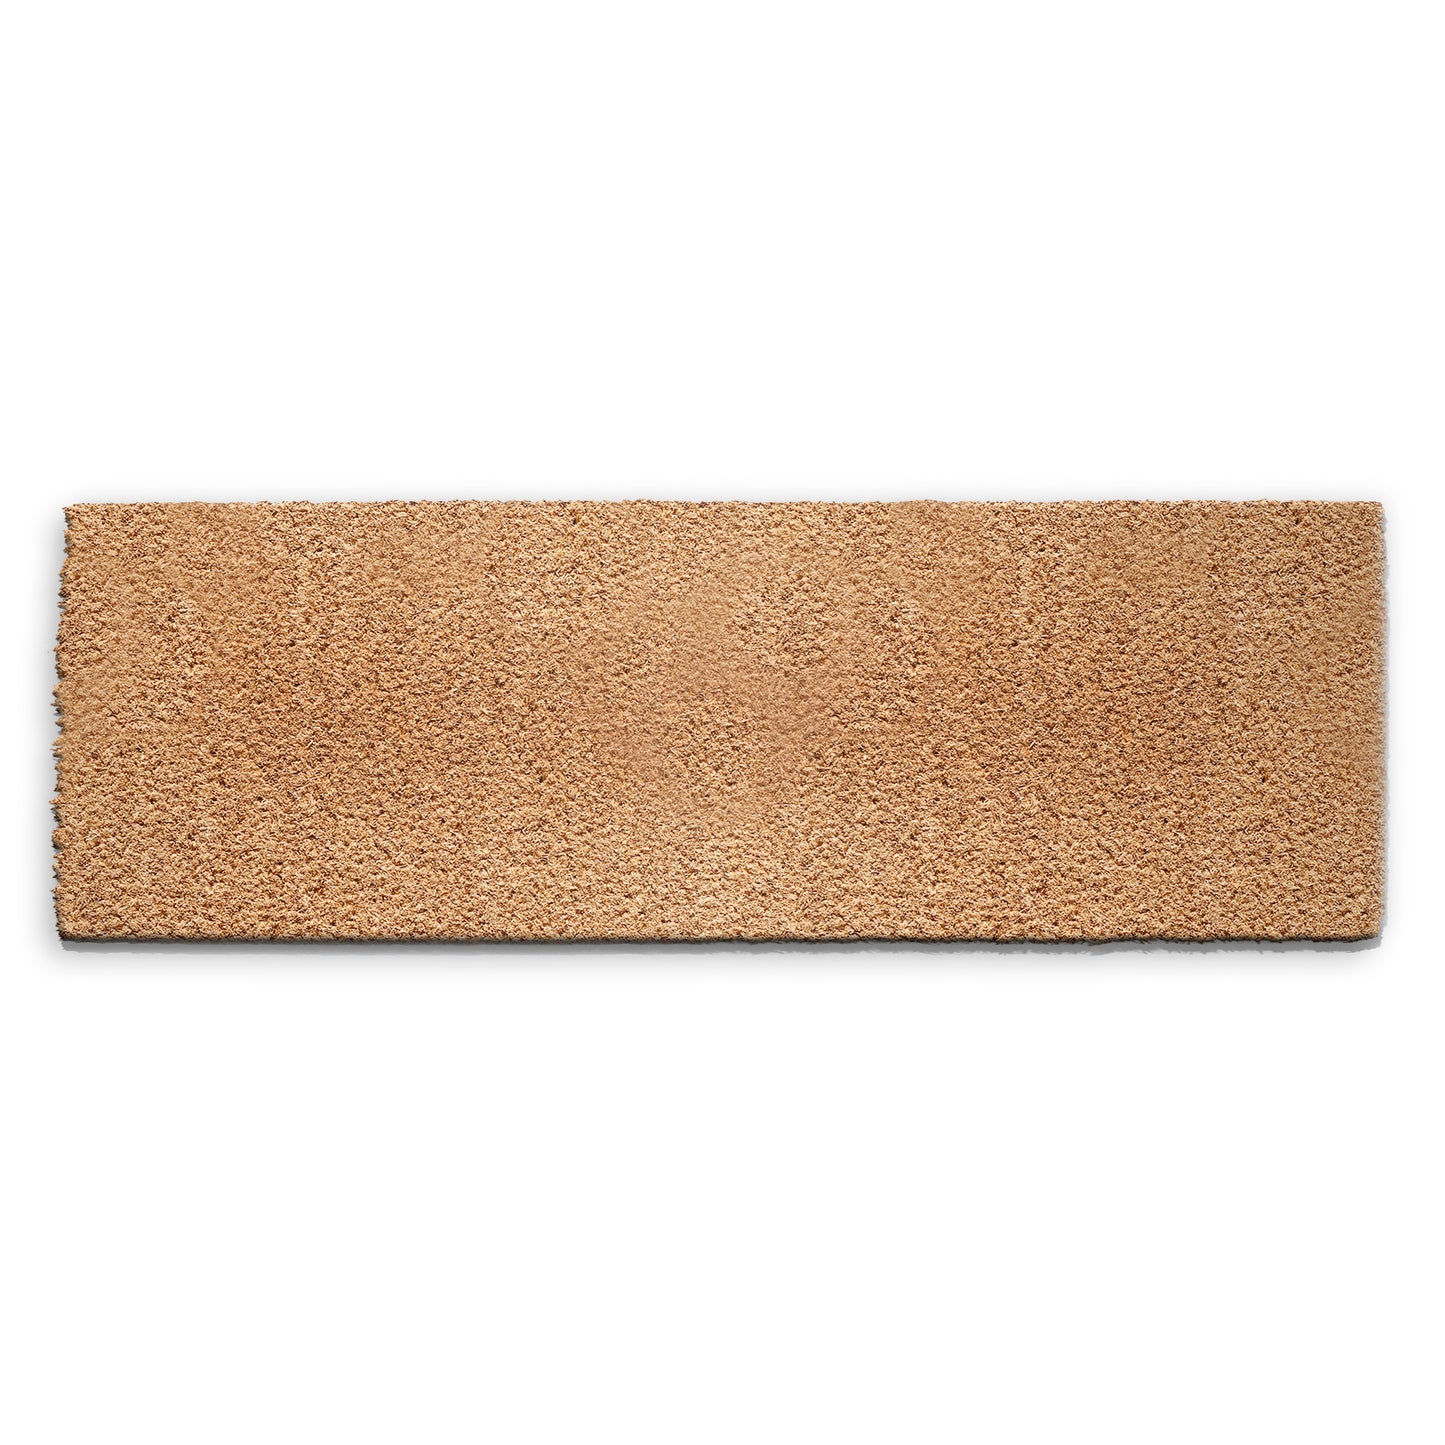 Blank Coir Doormat